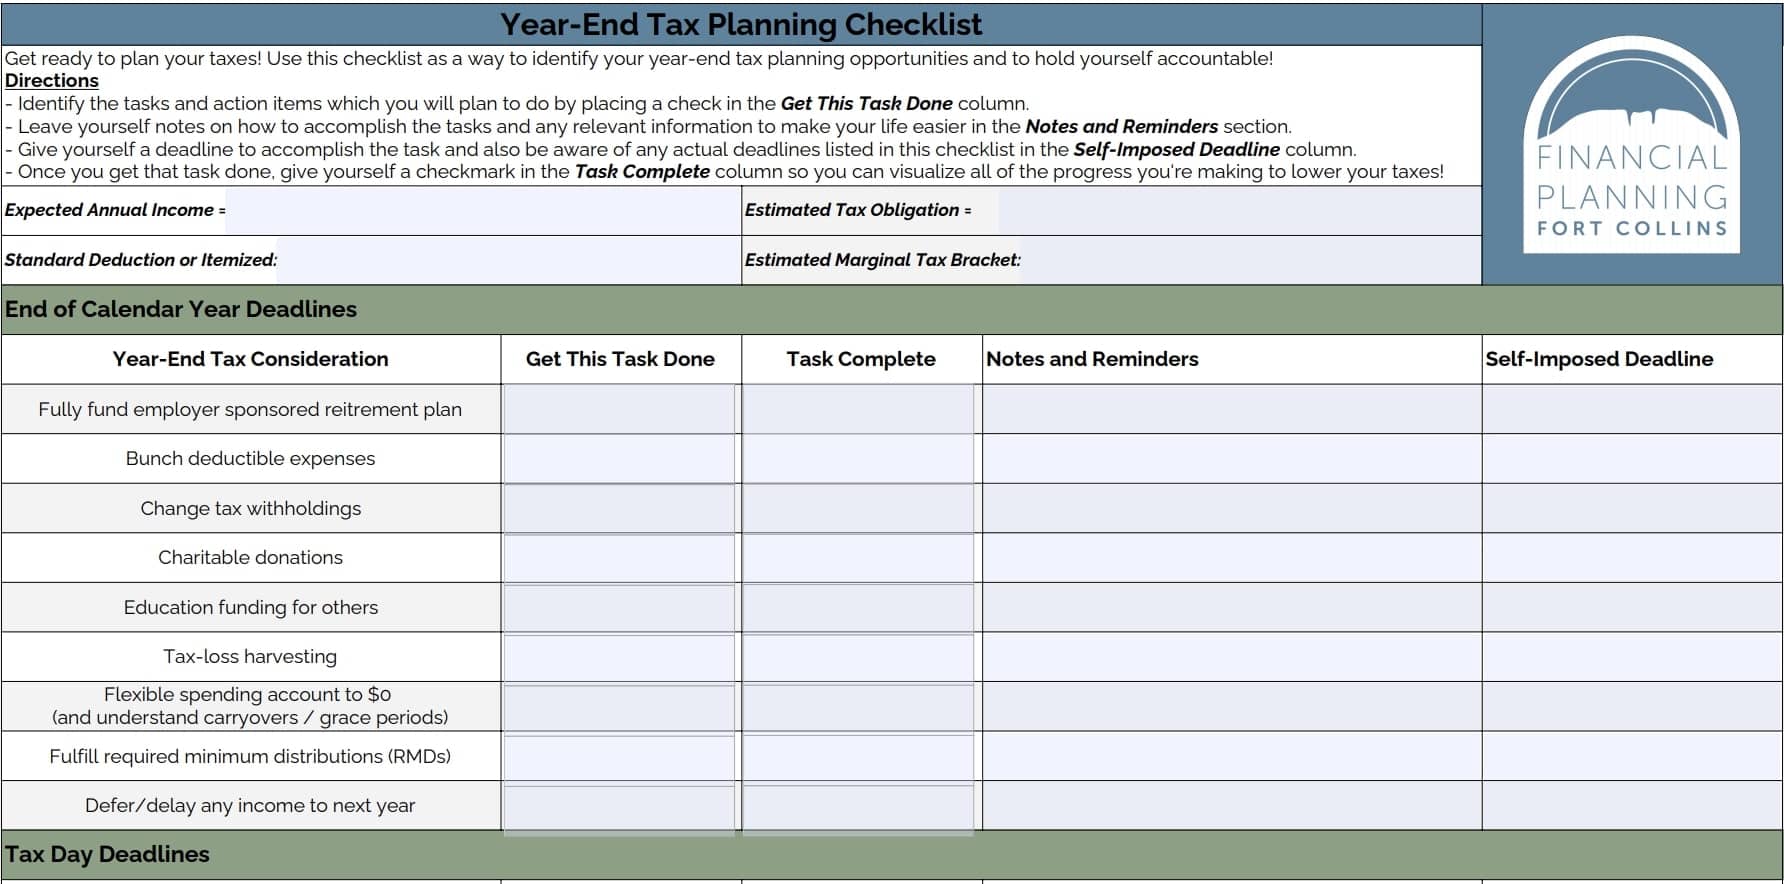 Tax Planning Checklist